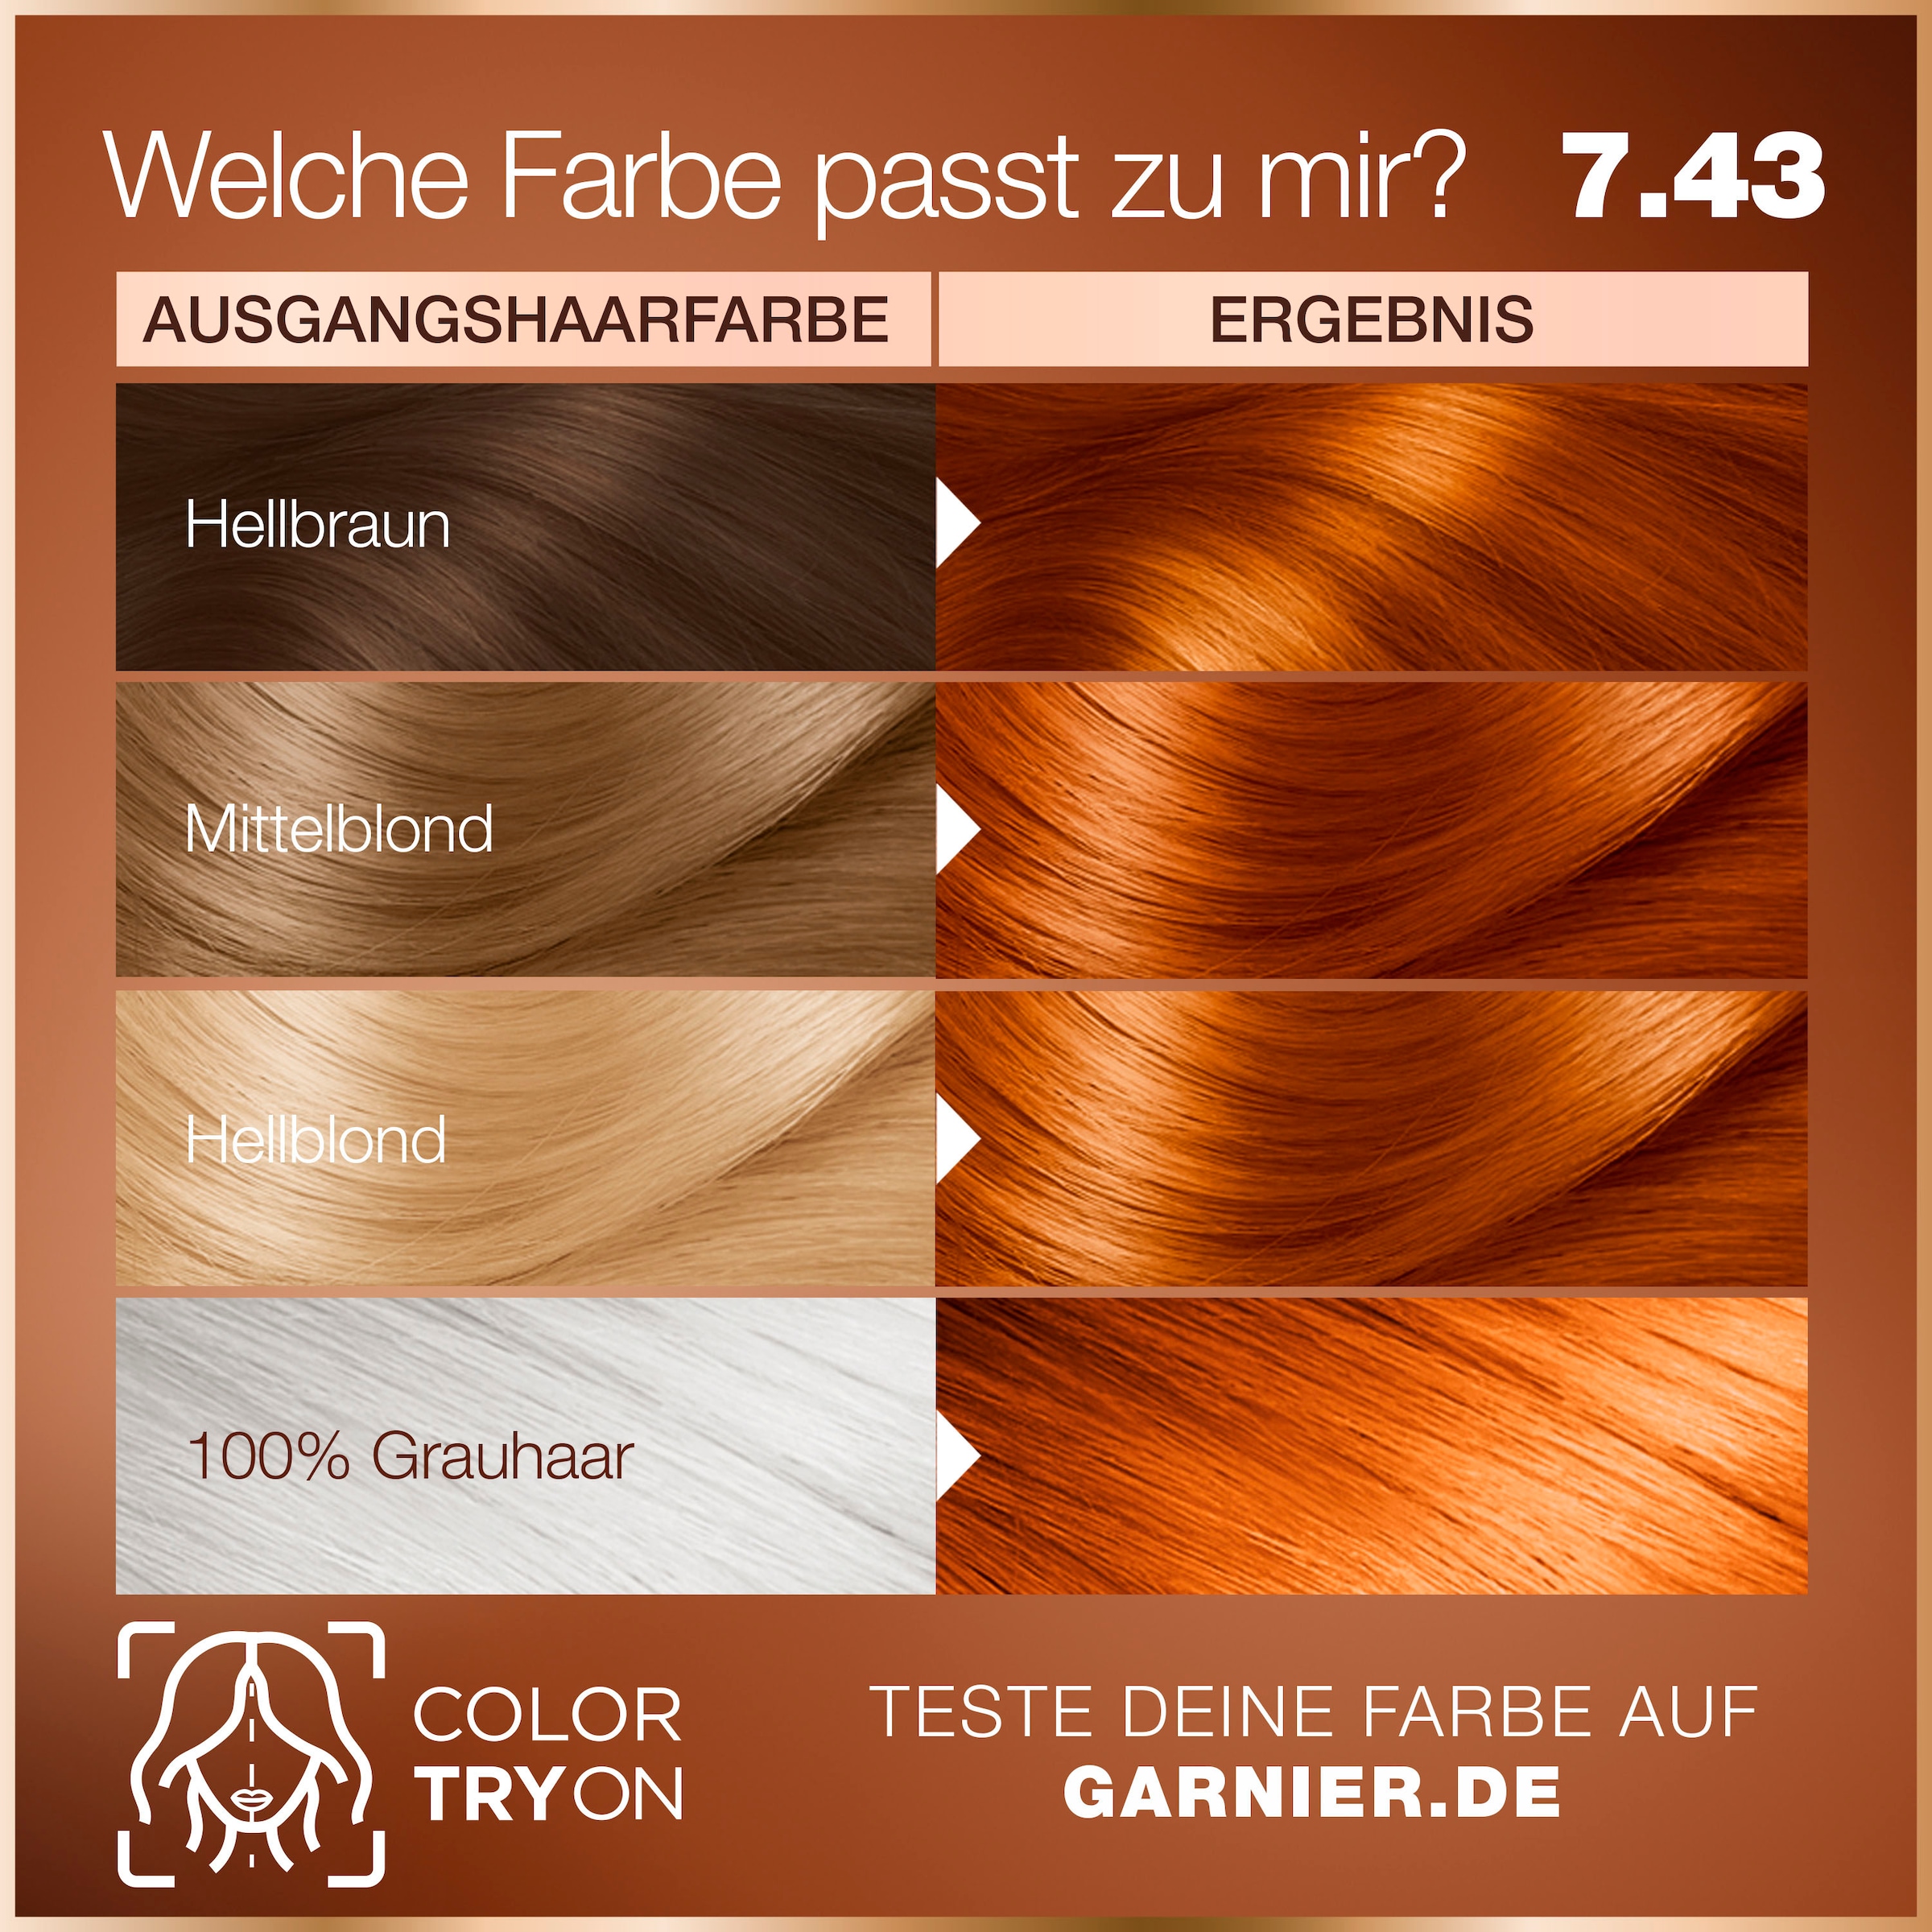 Coloration Haarfarbe« Online »Garnier Shop OTTO GARNIER bestellen im Dauerhafte GOOD